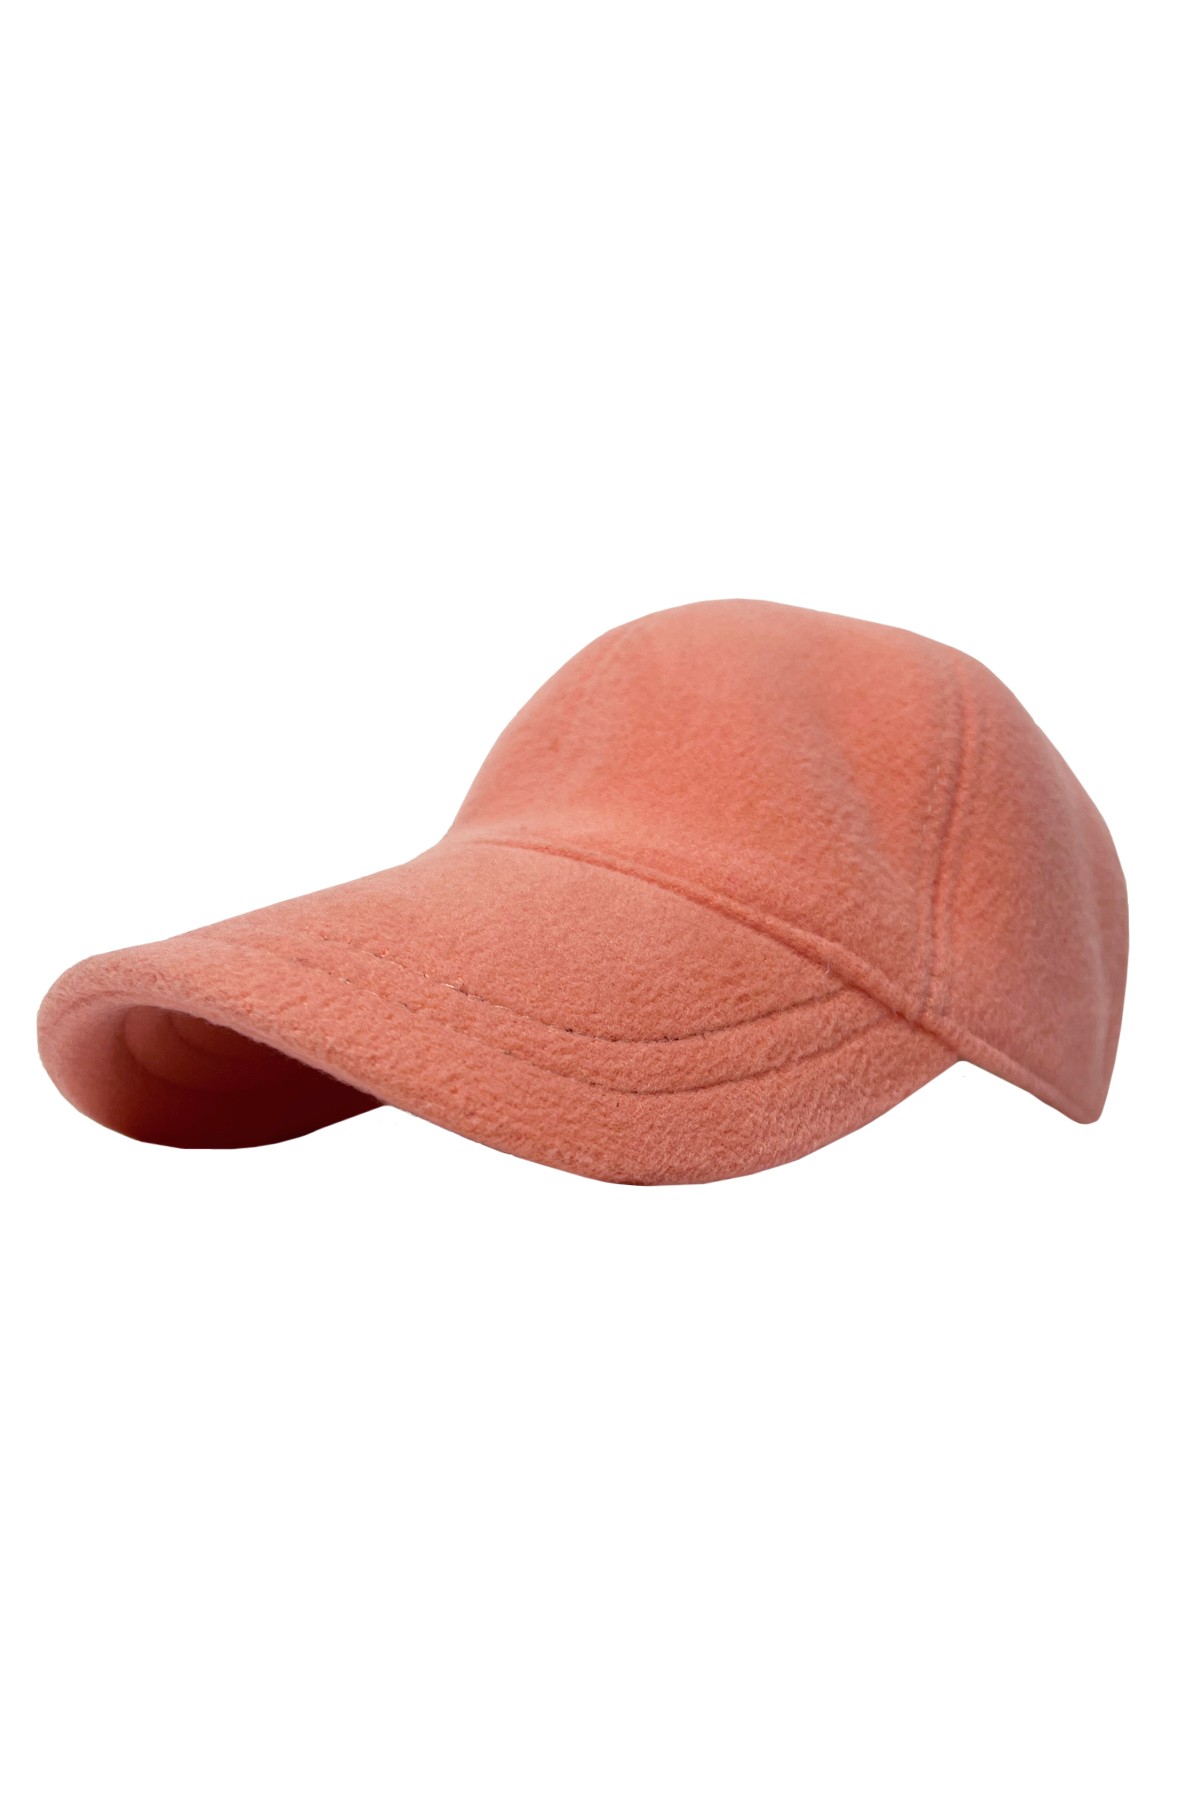 Jhim - Basic Kaşe Şapka